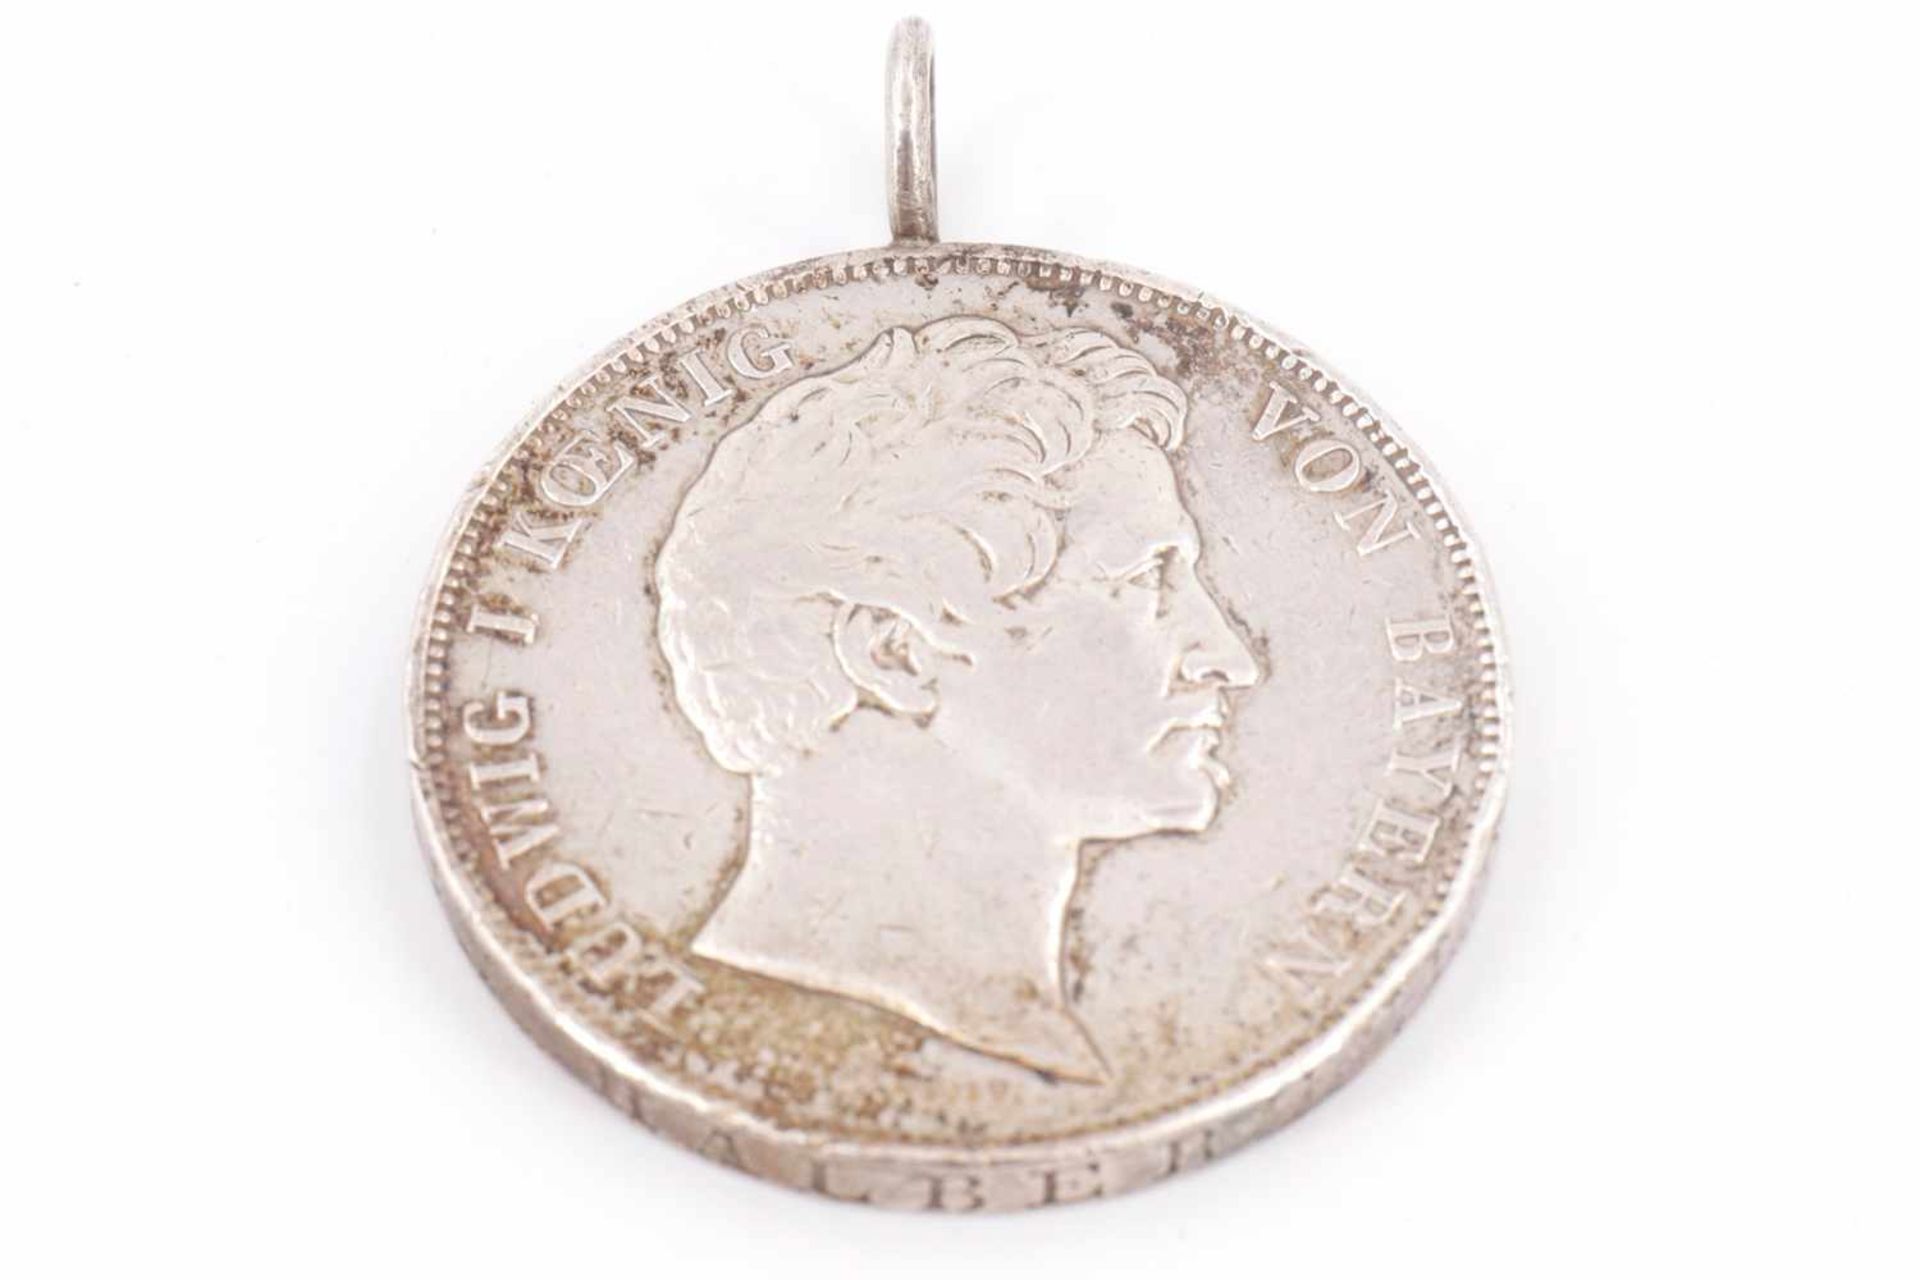 Anhänger mit Silbermünze "Münzvereinigung Süddeutscher Staaten 1837", Gebrauchsspuren, Gesamtgewicht